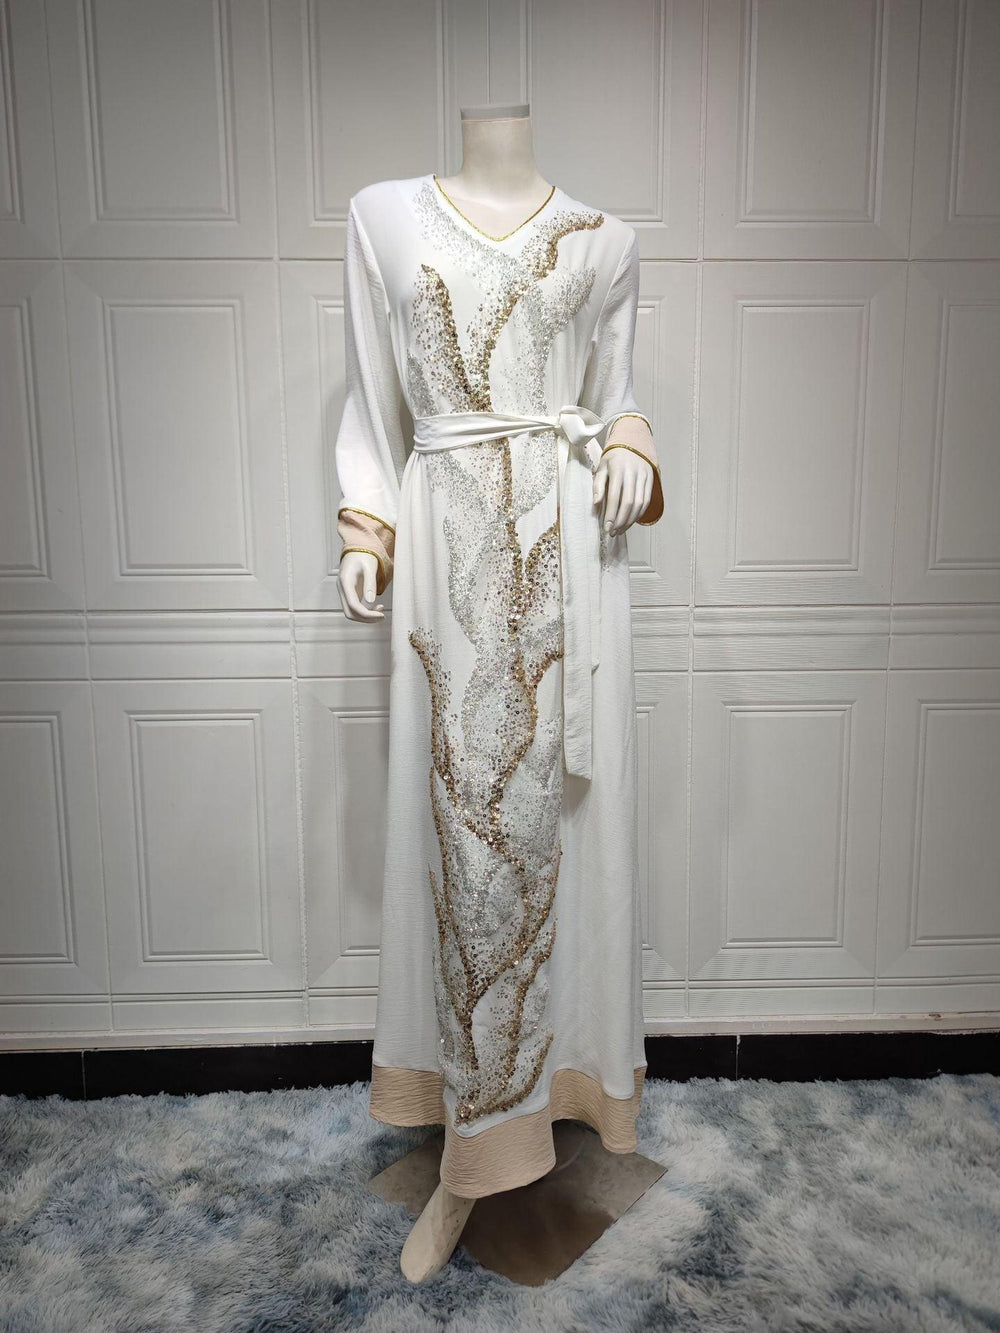 Arab Robe Sequin Embroider Fashion - EX-STOCK CANADA